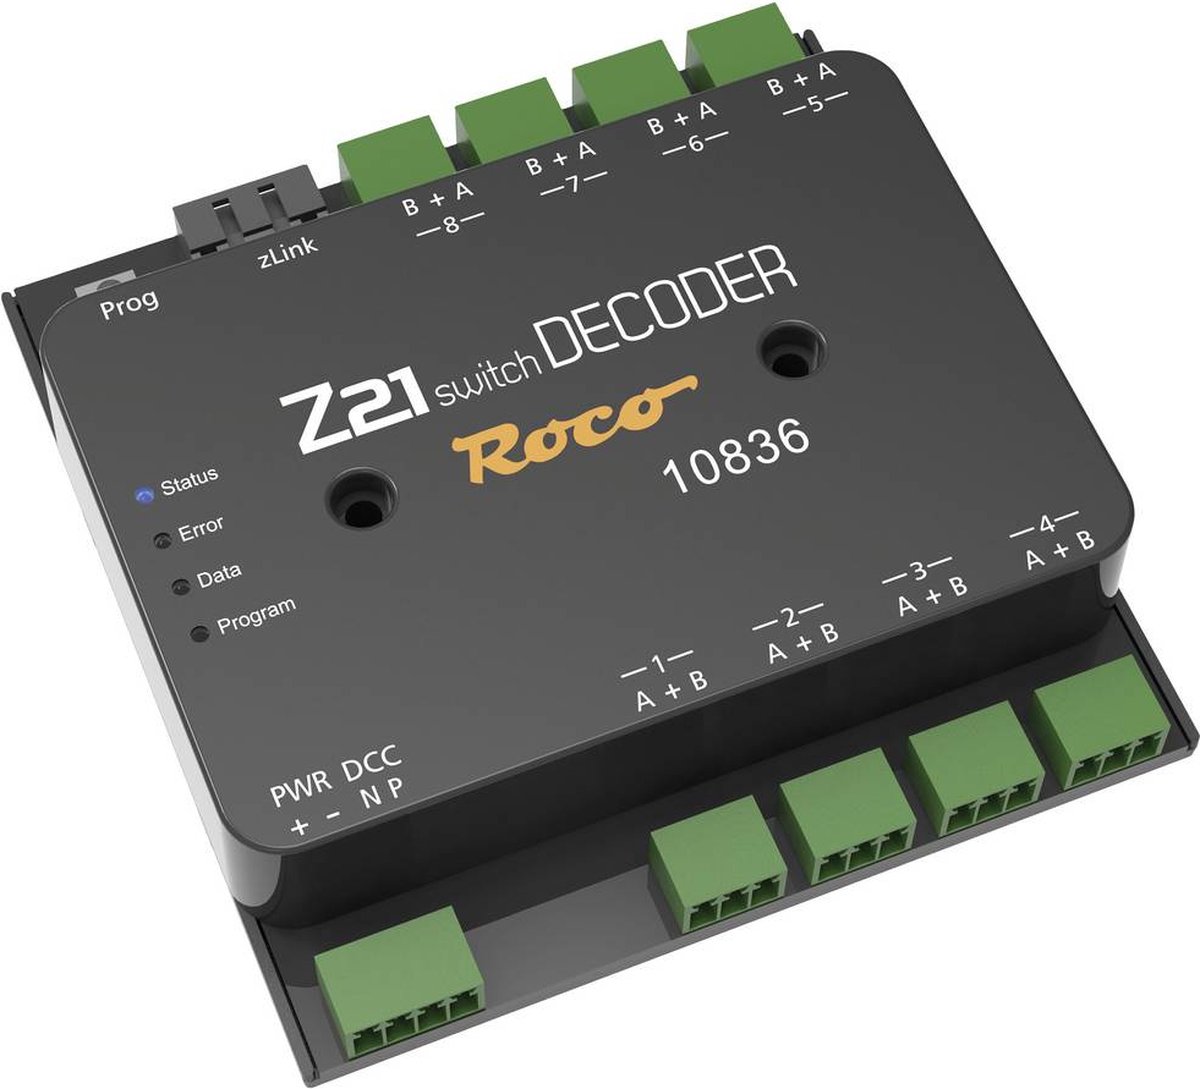 Roco 10836 Z21 switch Decoder Schakeldecoder Module - Roco